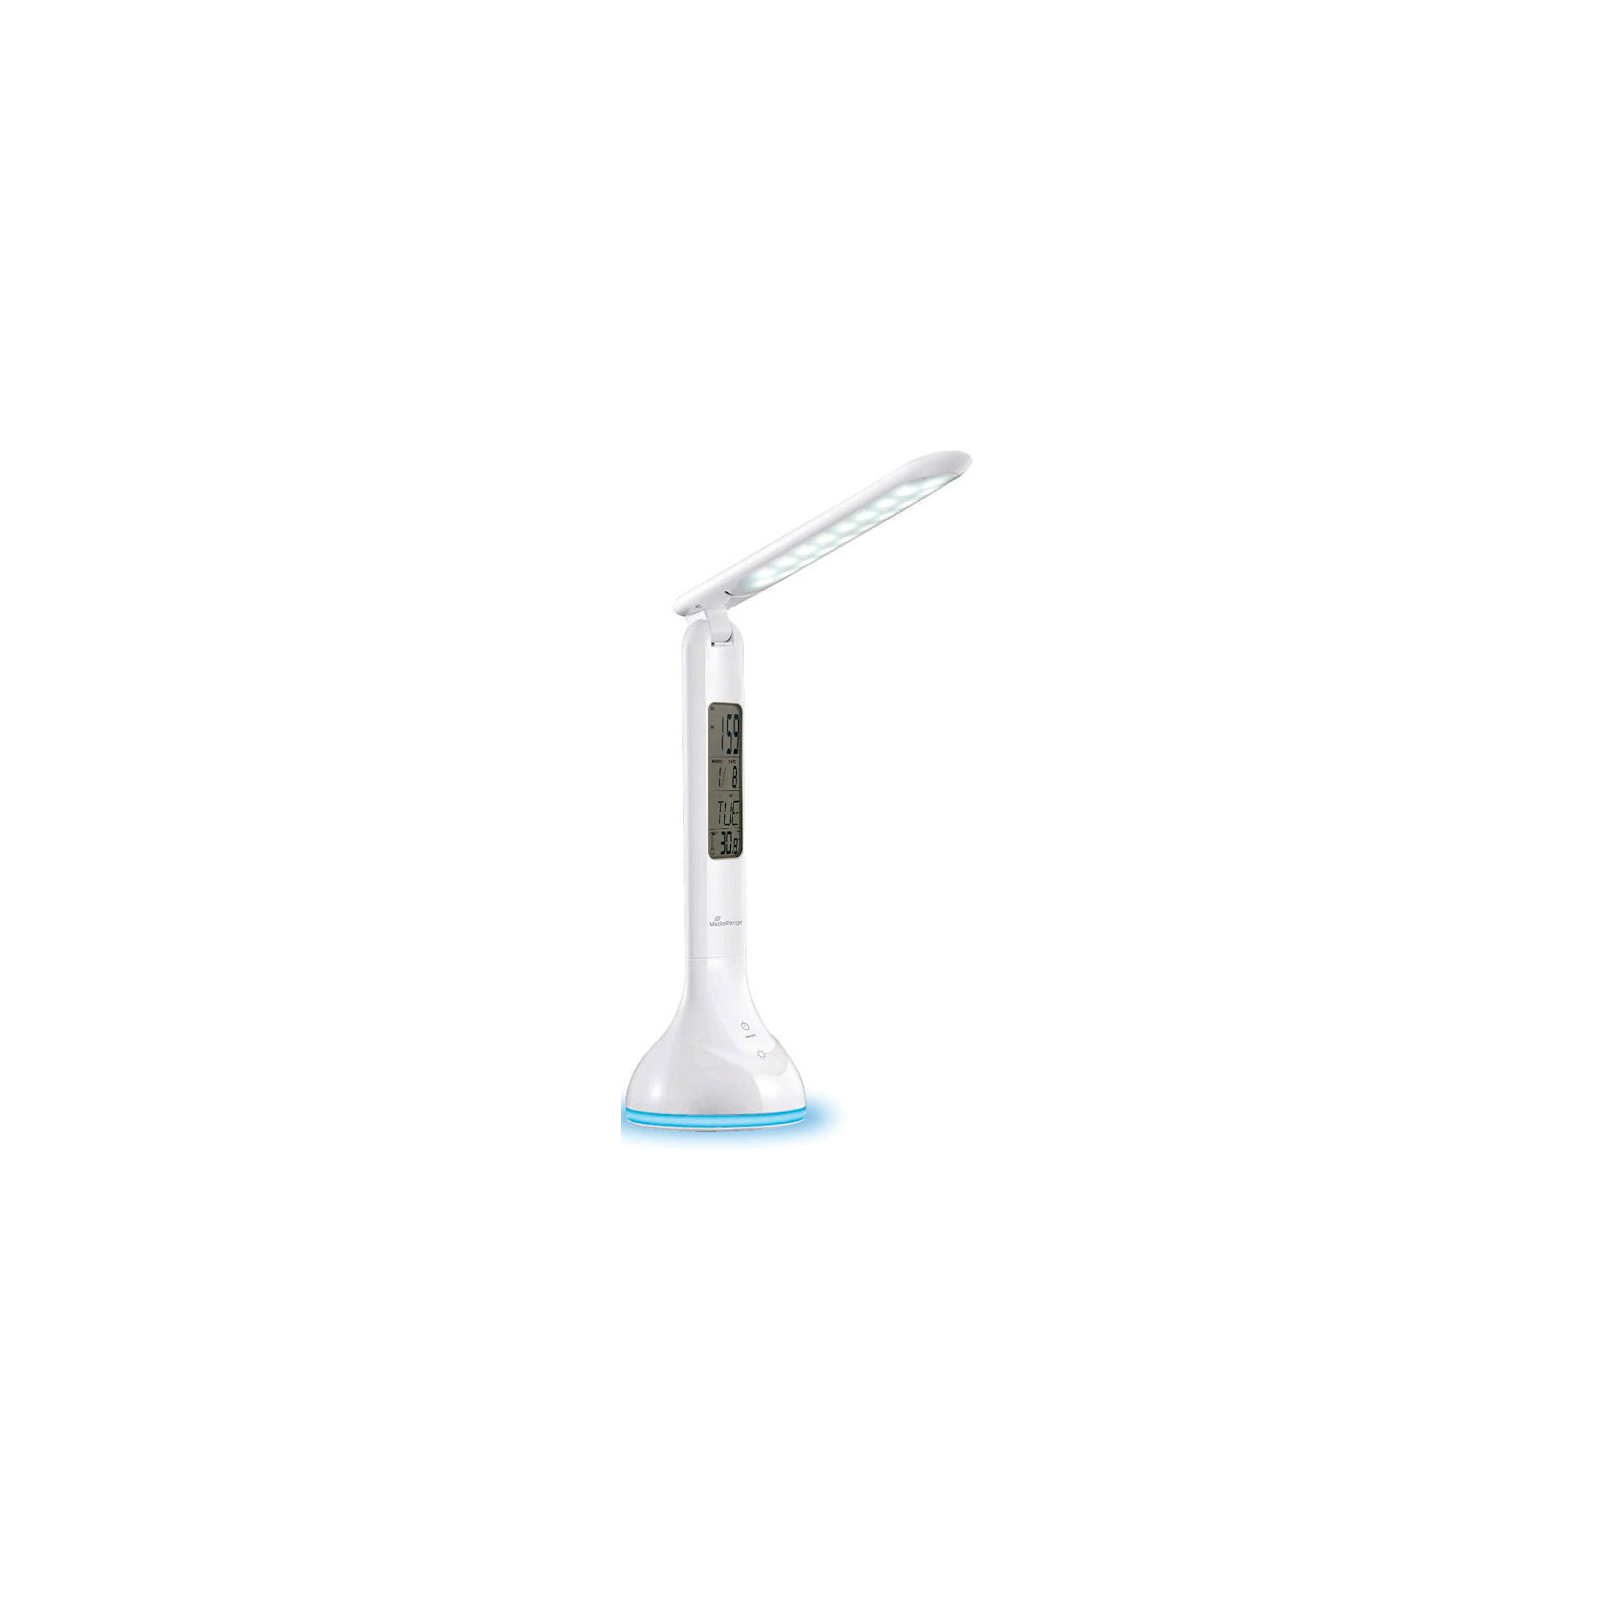 Настольная лампа Mediarange Compact LED desk lamp with LCD display, glossy-white (MROS502)